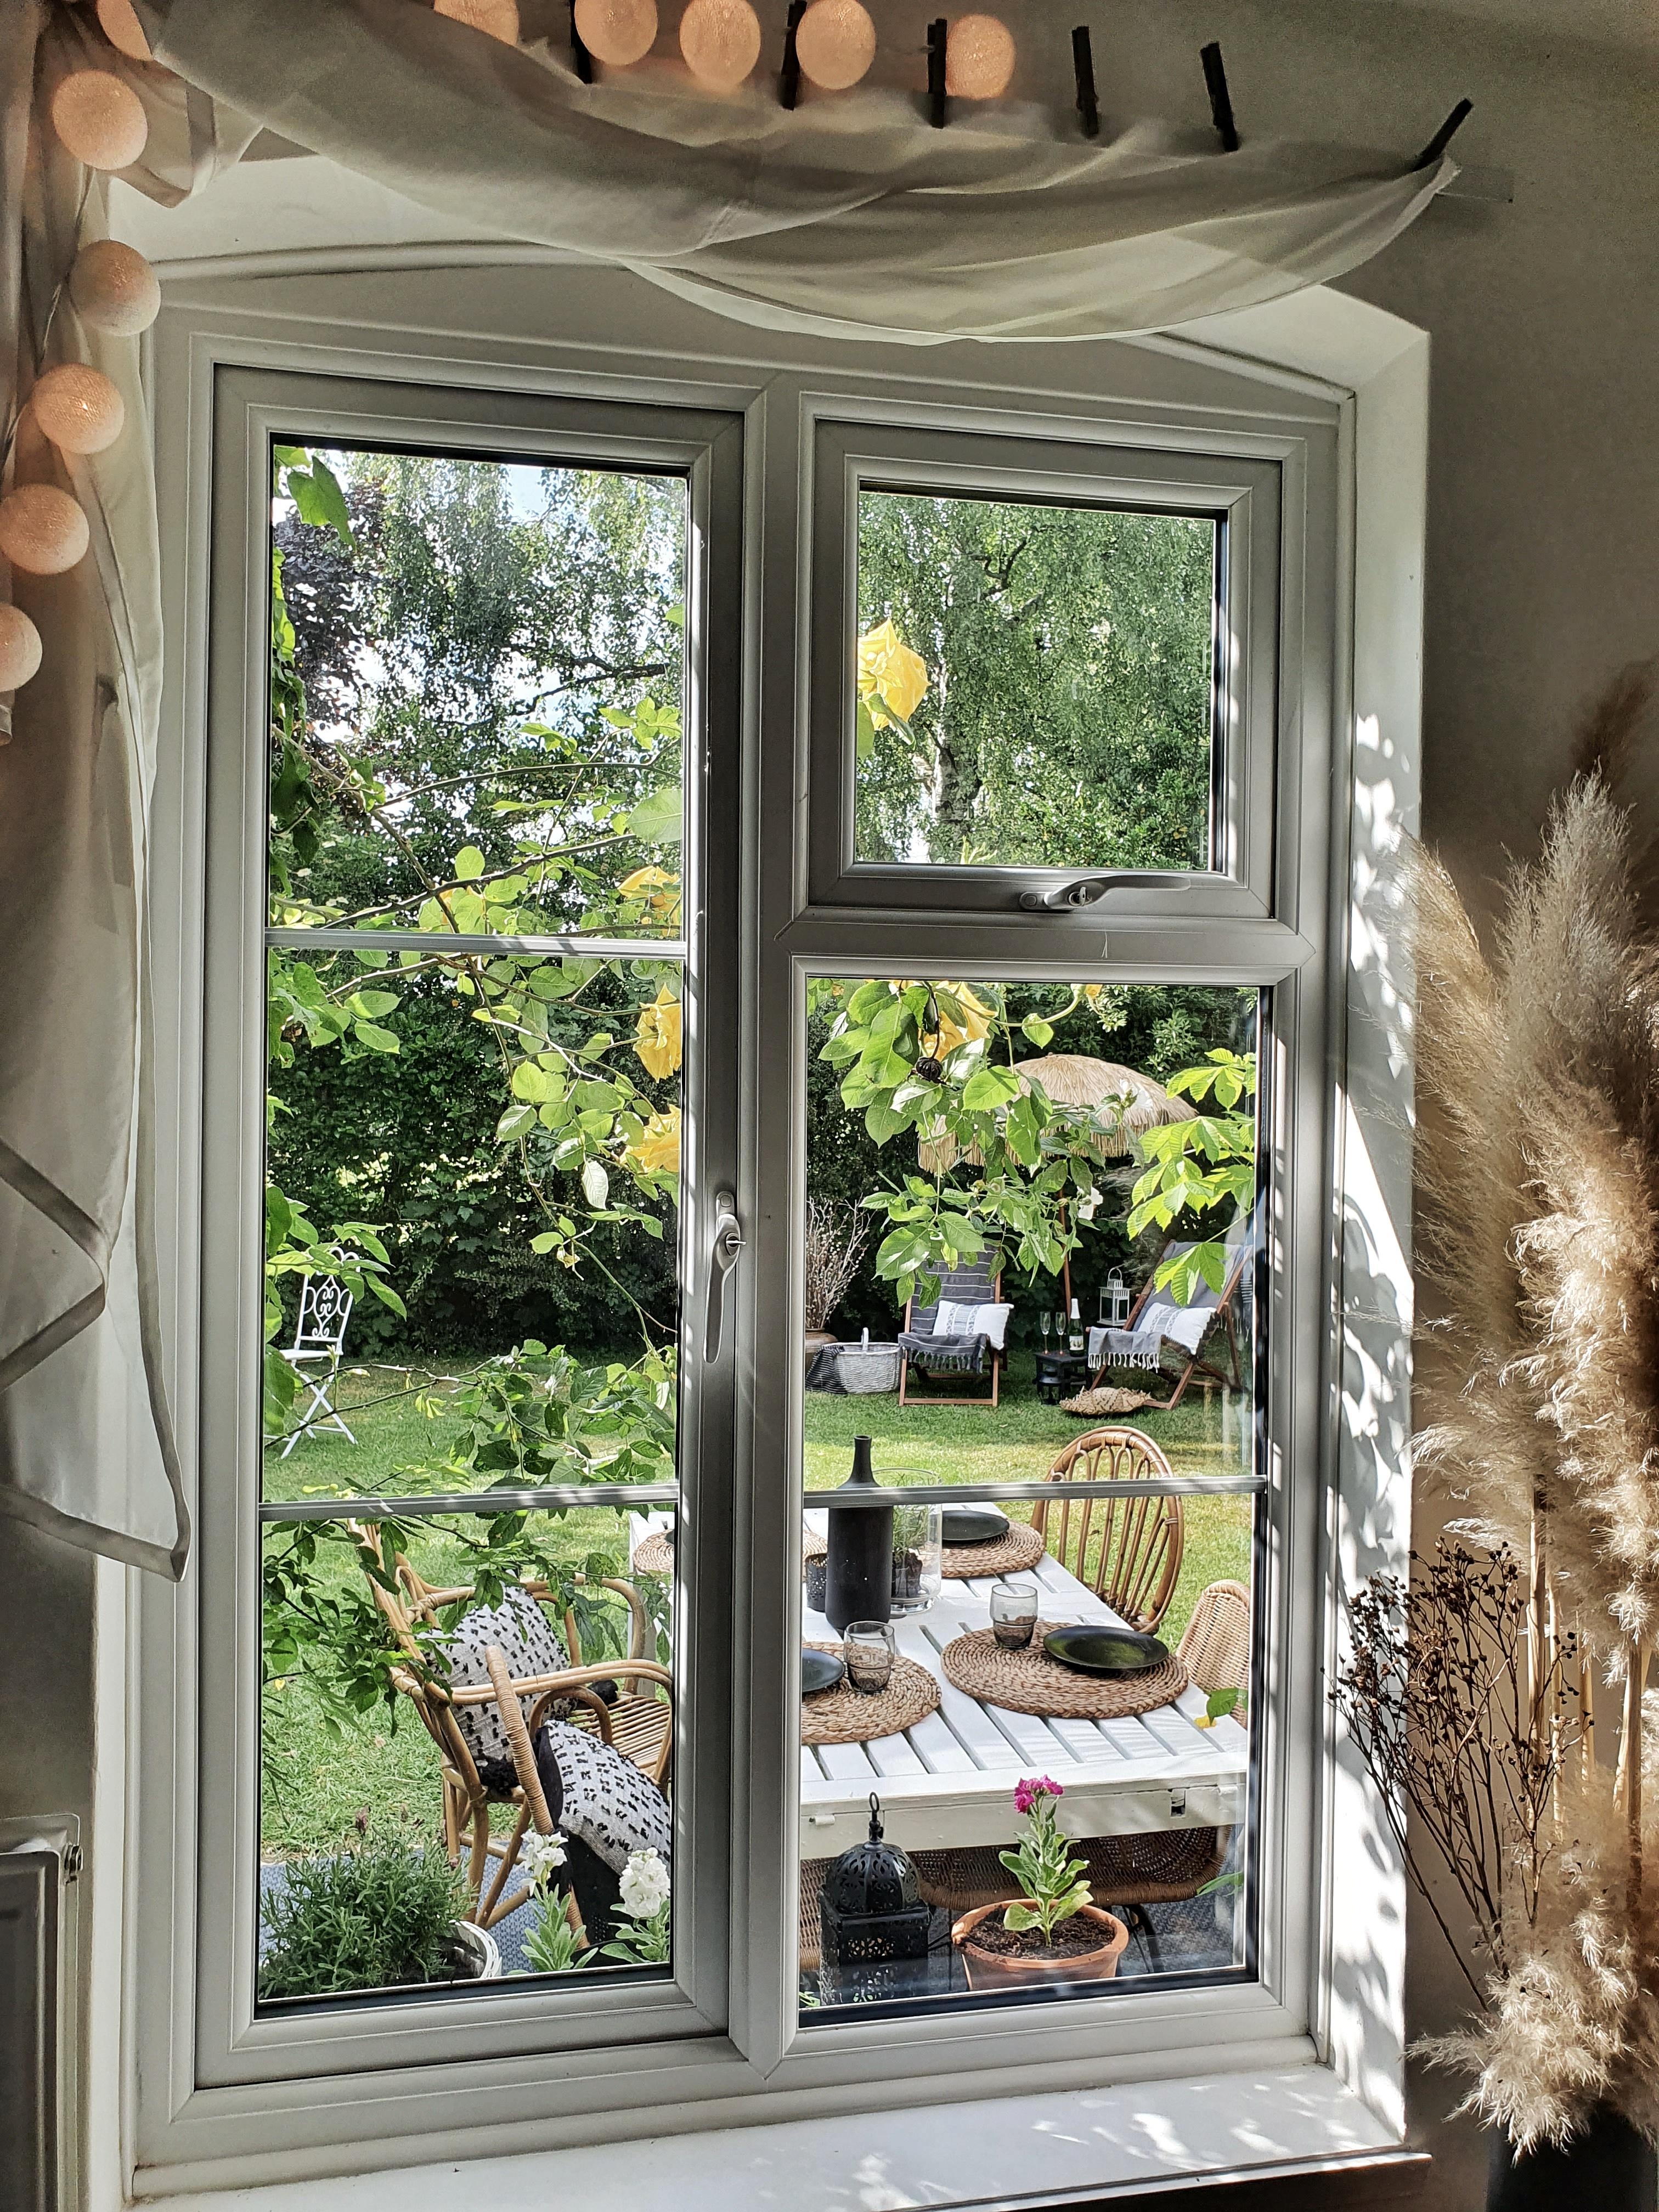 #sonne #terrasse #garten #england #couchliebt #zuhausesein #altbauliebe